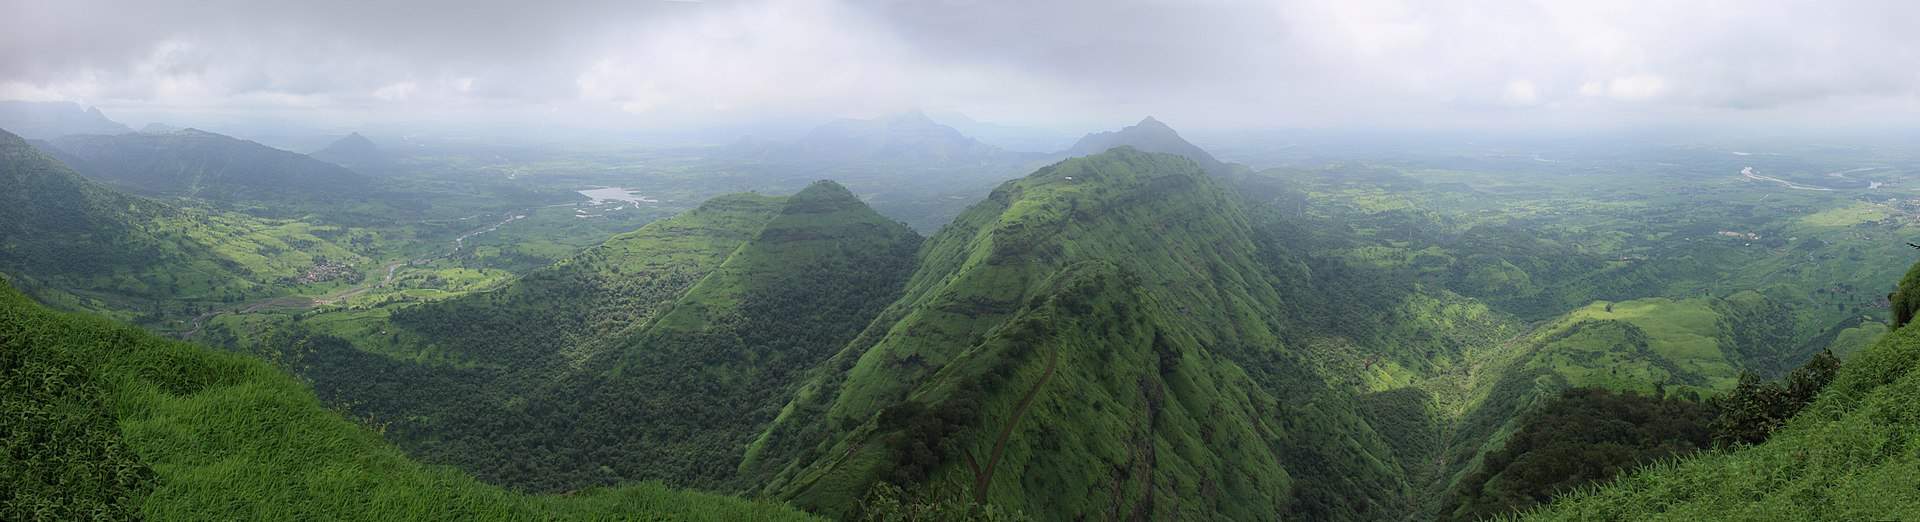 Abb. 4: Die Western Ghats in Indien in der Regenzeit; Quelle: Wikipedia